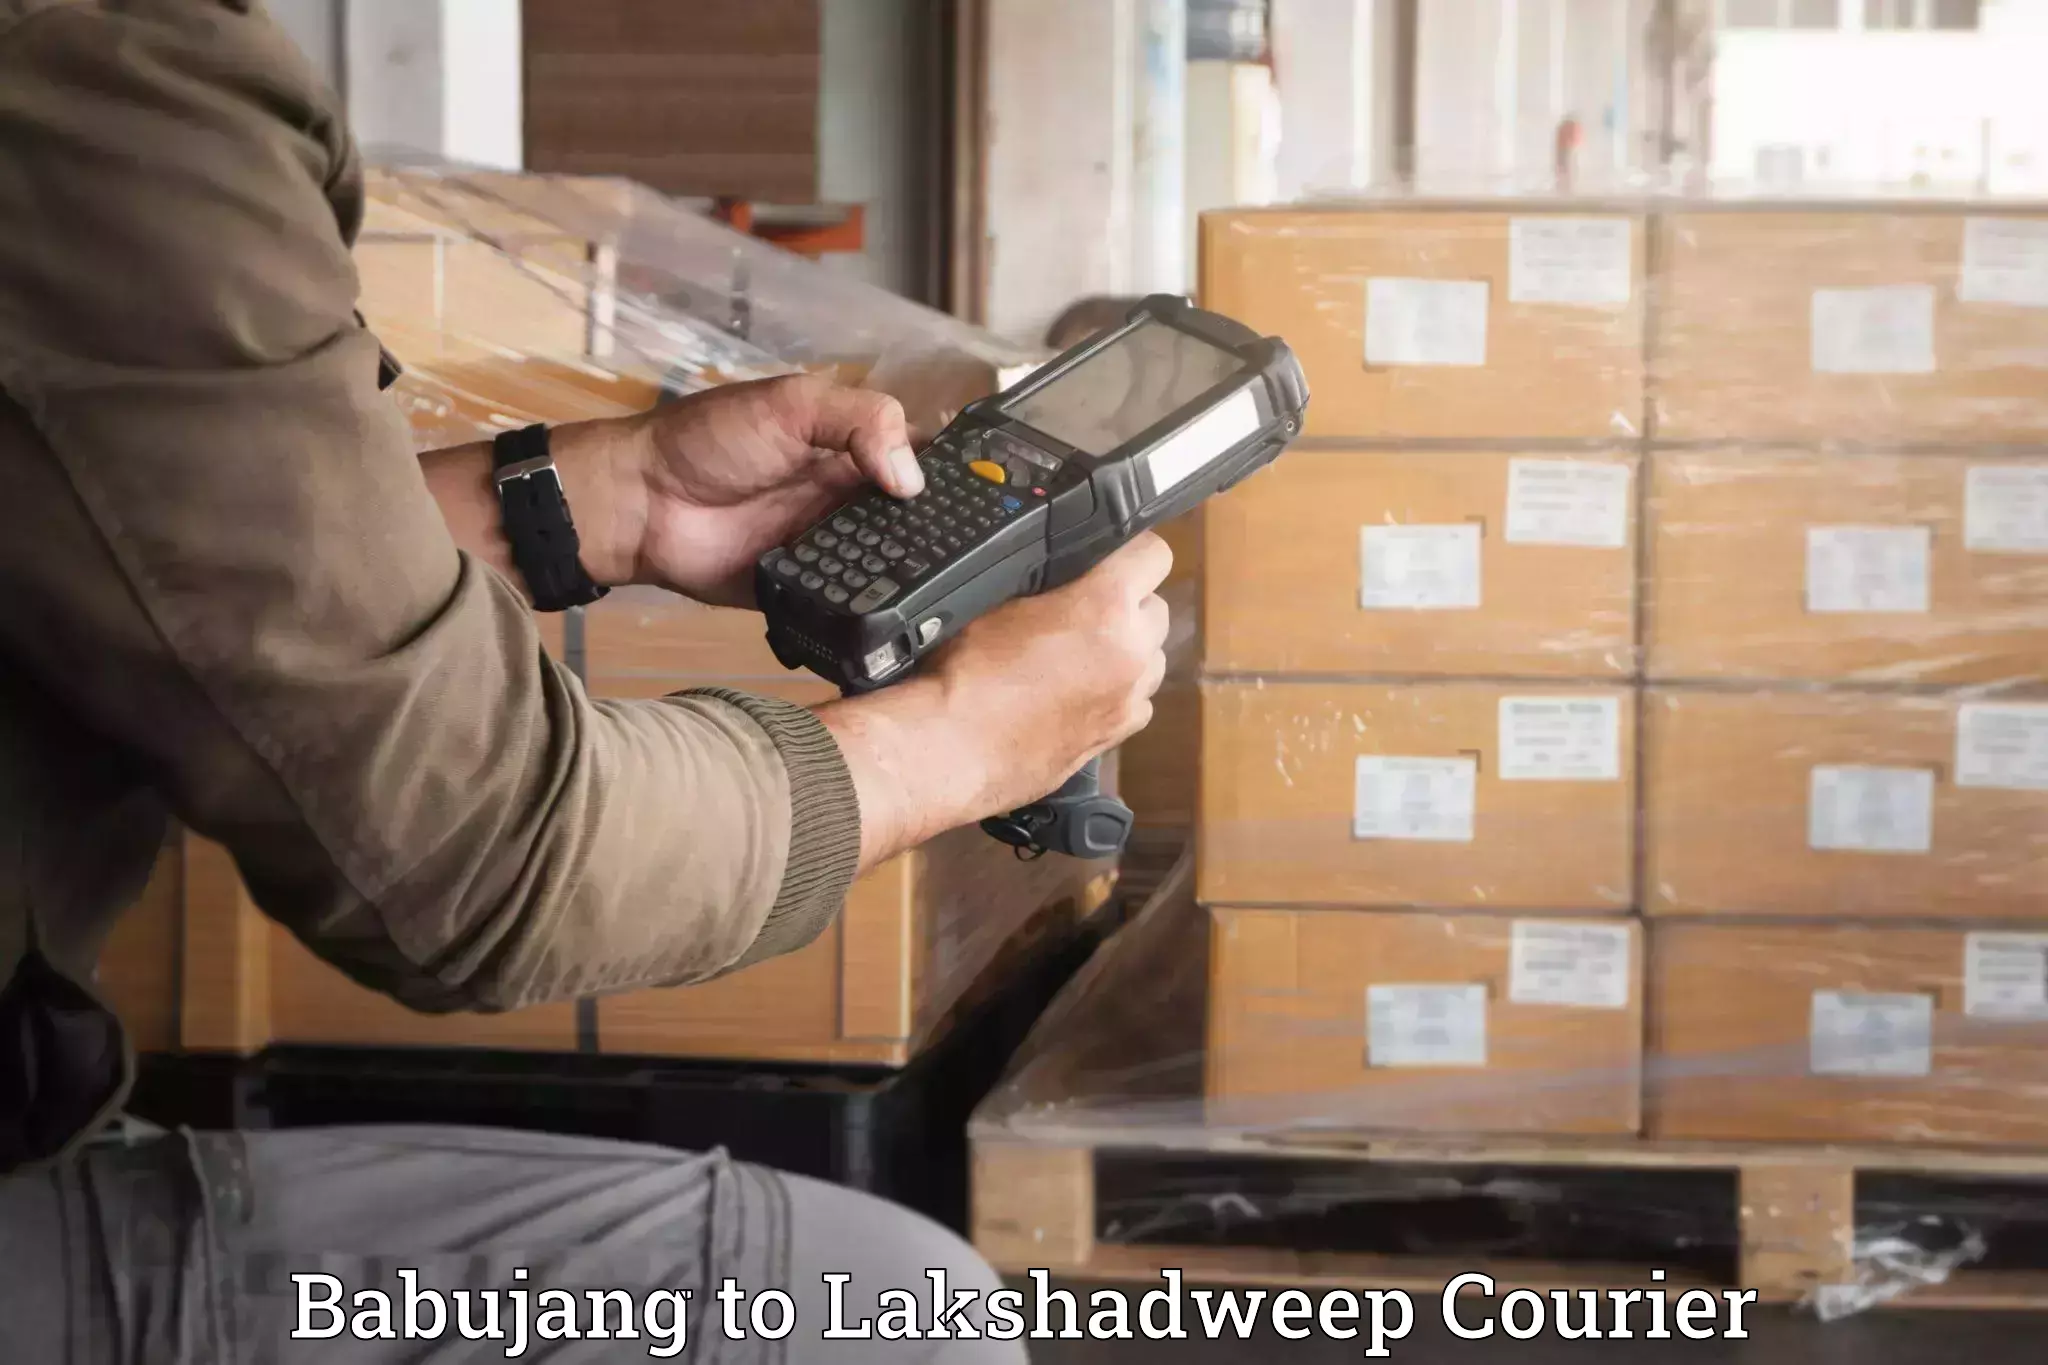 Moving and packing experts Babujang to Lakshadweep